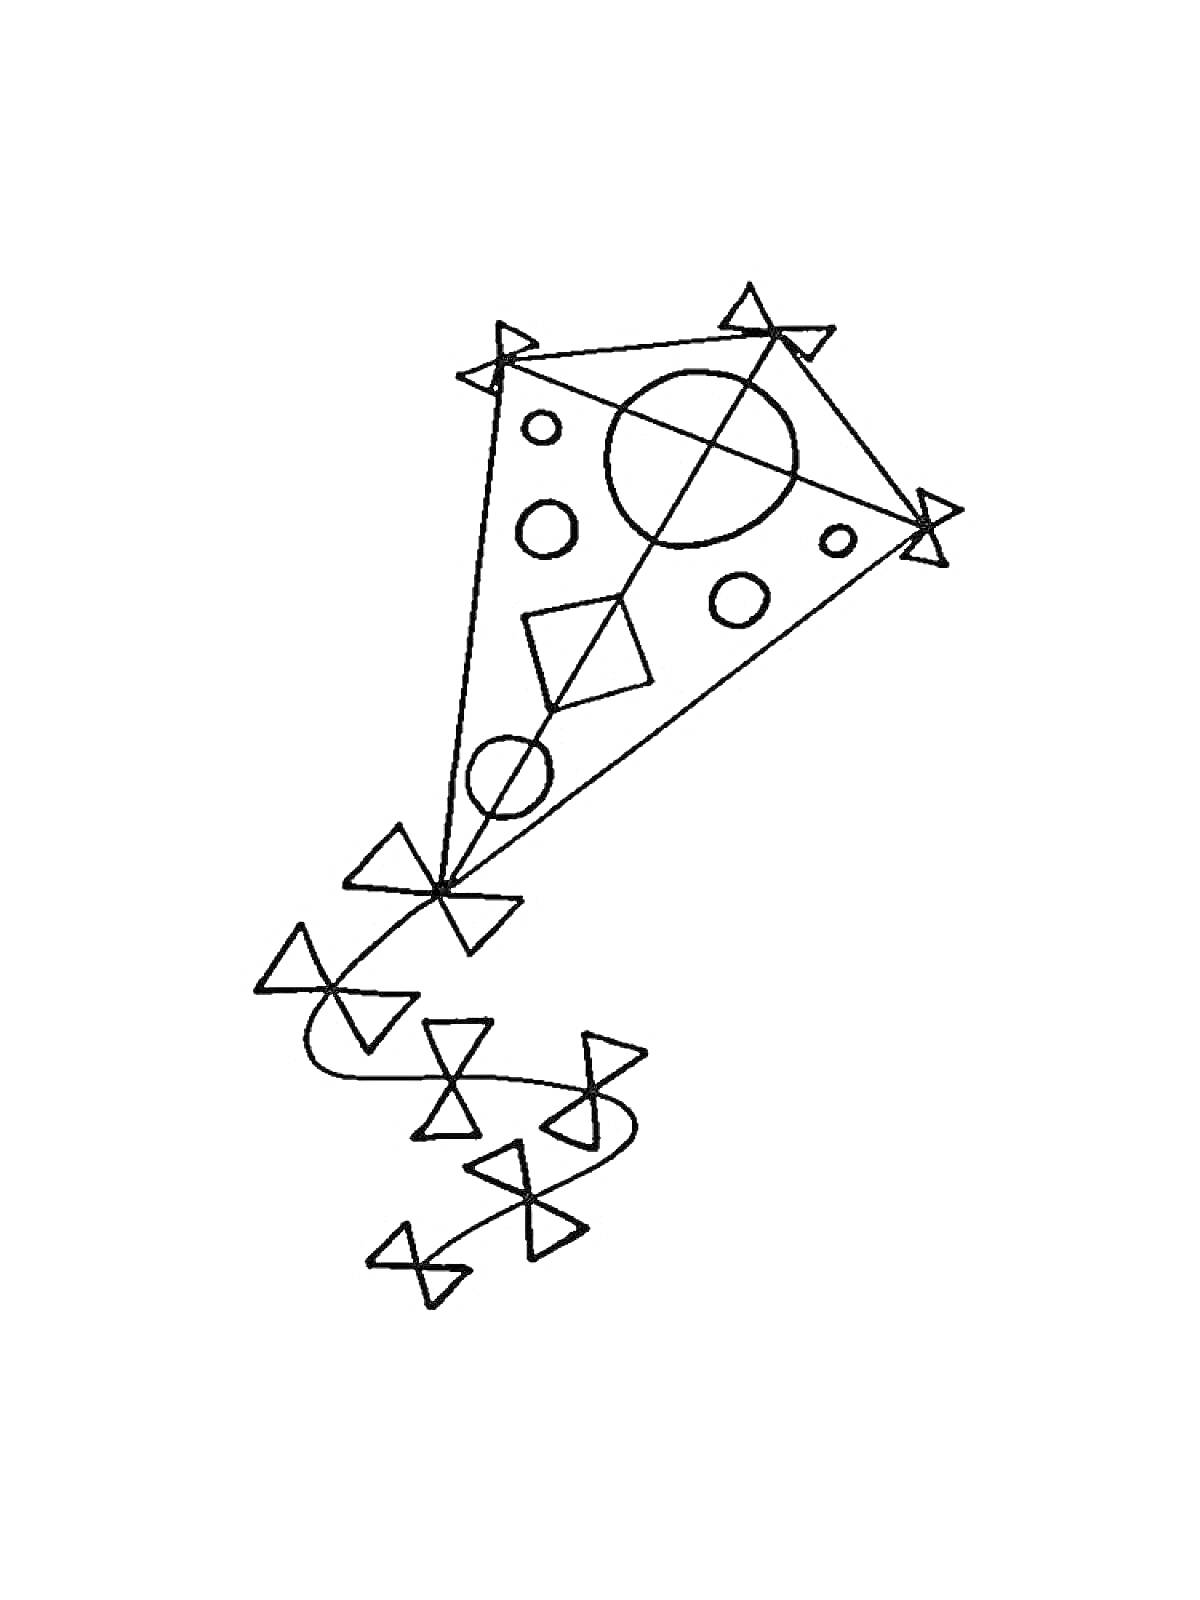 Раскраска Воздушный змей с геометрическими фигурами (треугольники, круги, ромбы) и хвост из треугольников